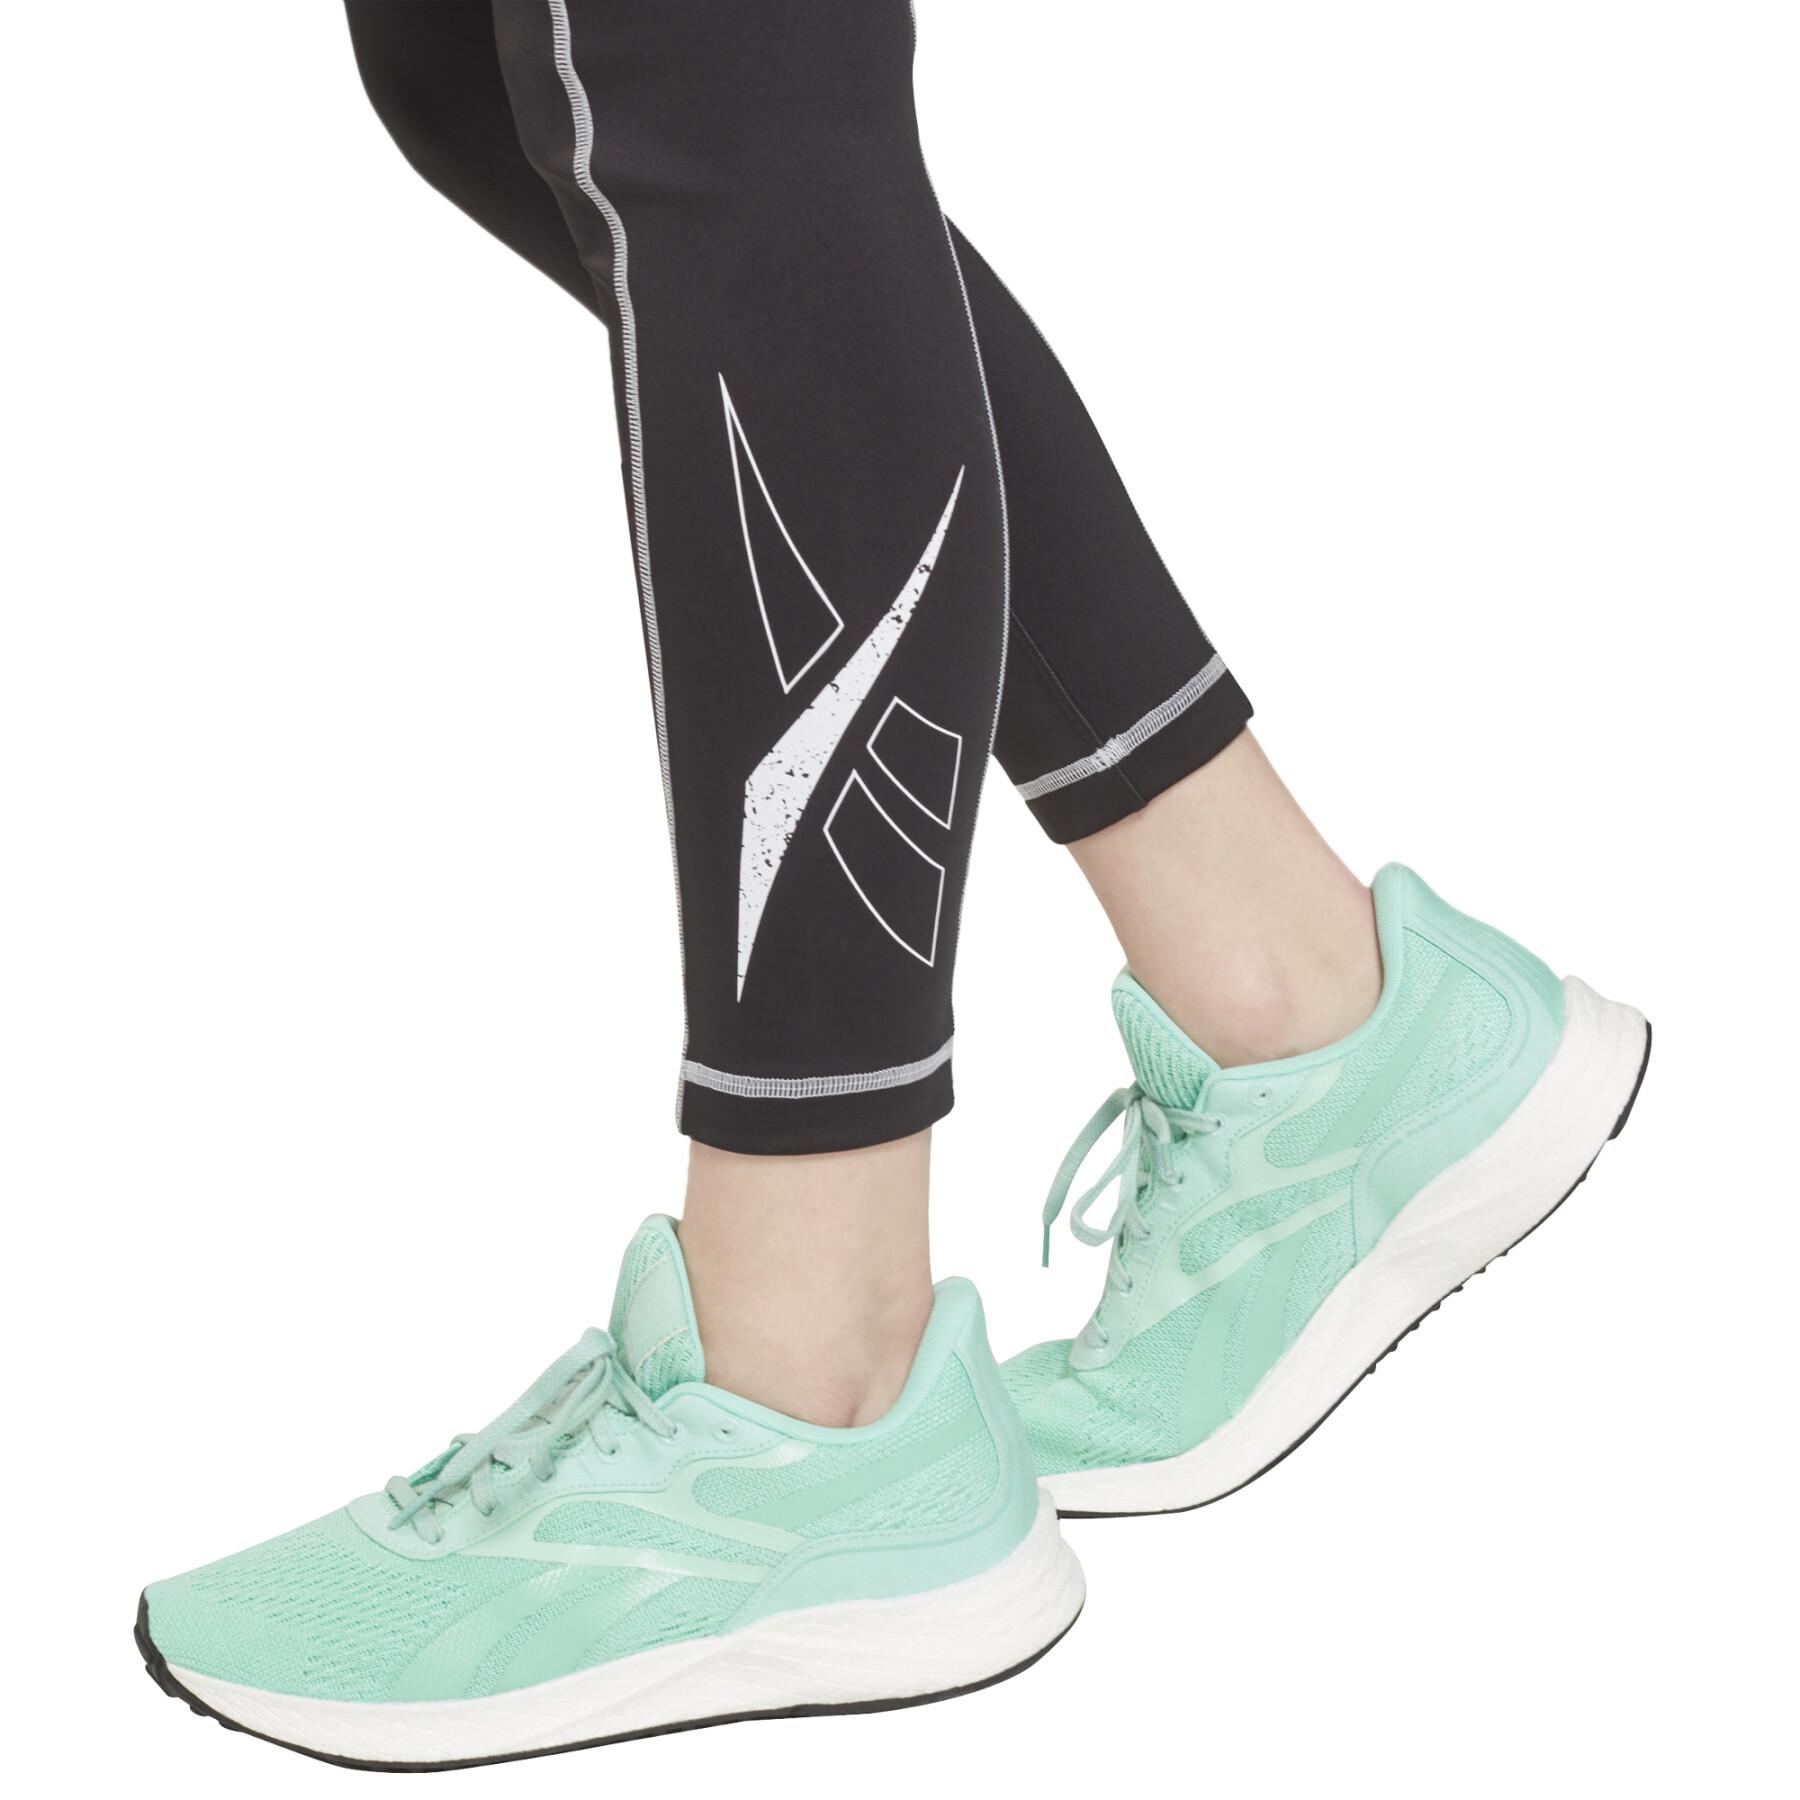 Damen-Leggings Reebok Workout Ready Big Logo